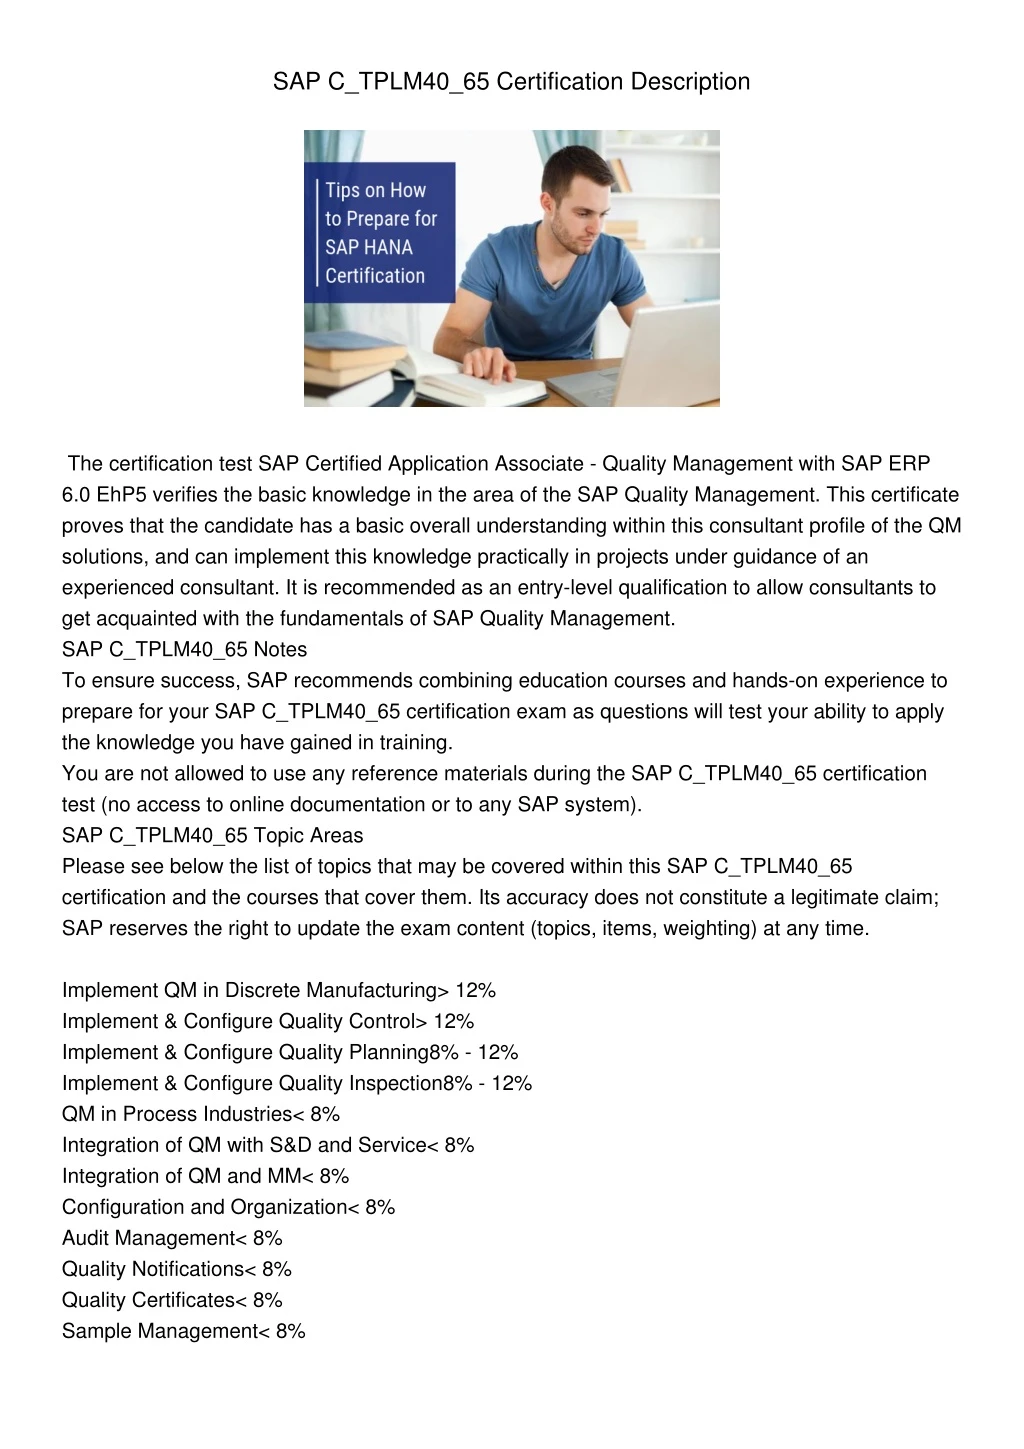 sap c tplm40 65 certification description